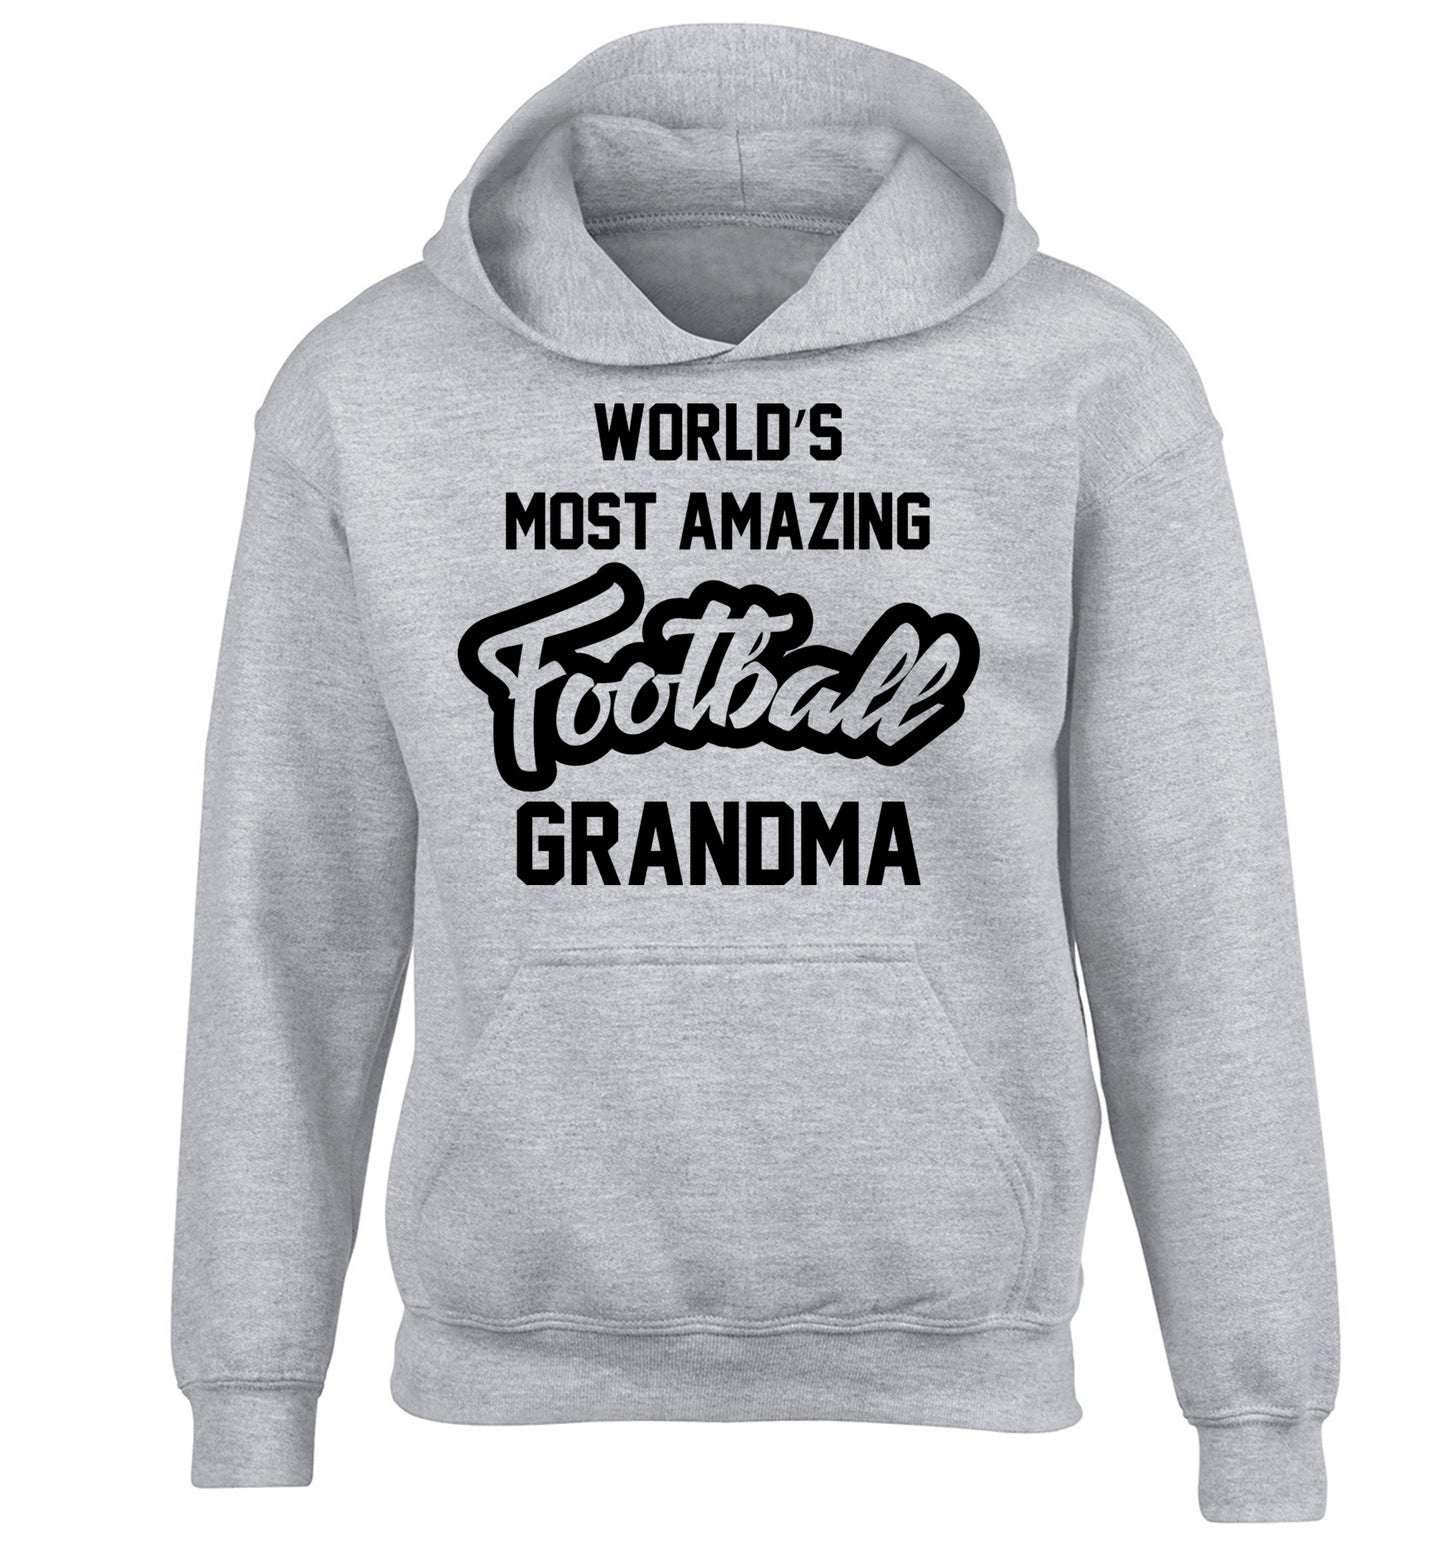 Worlds most amazing football grandma children's grey hoodie 12-14 Years